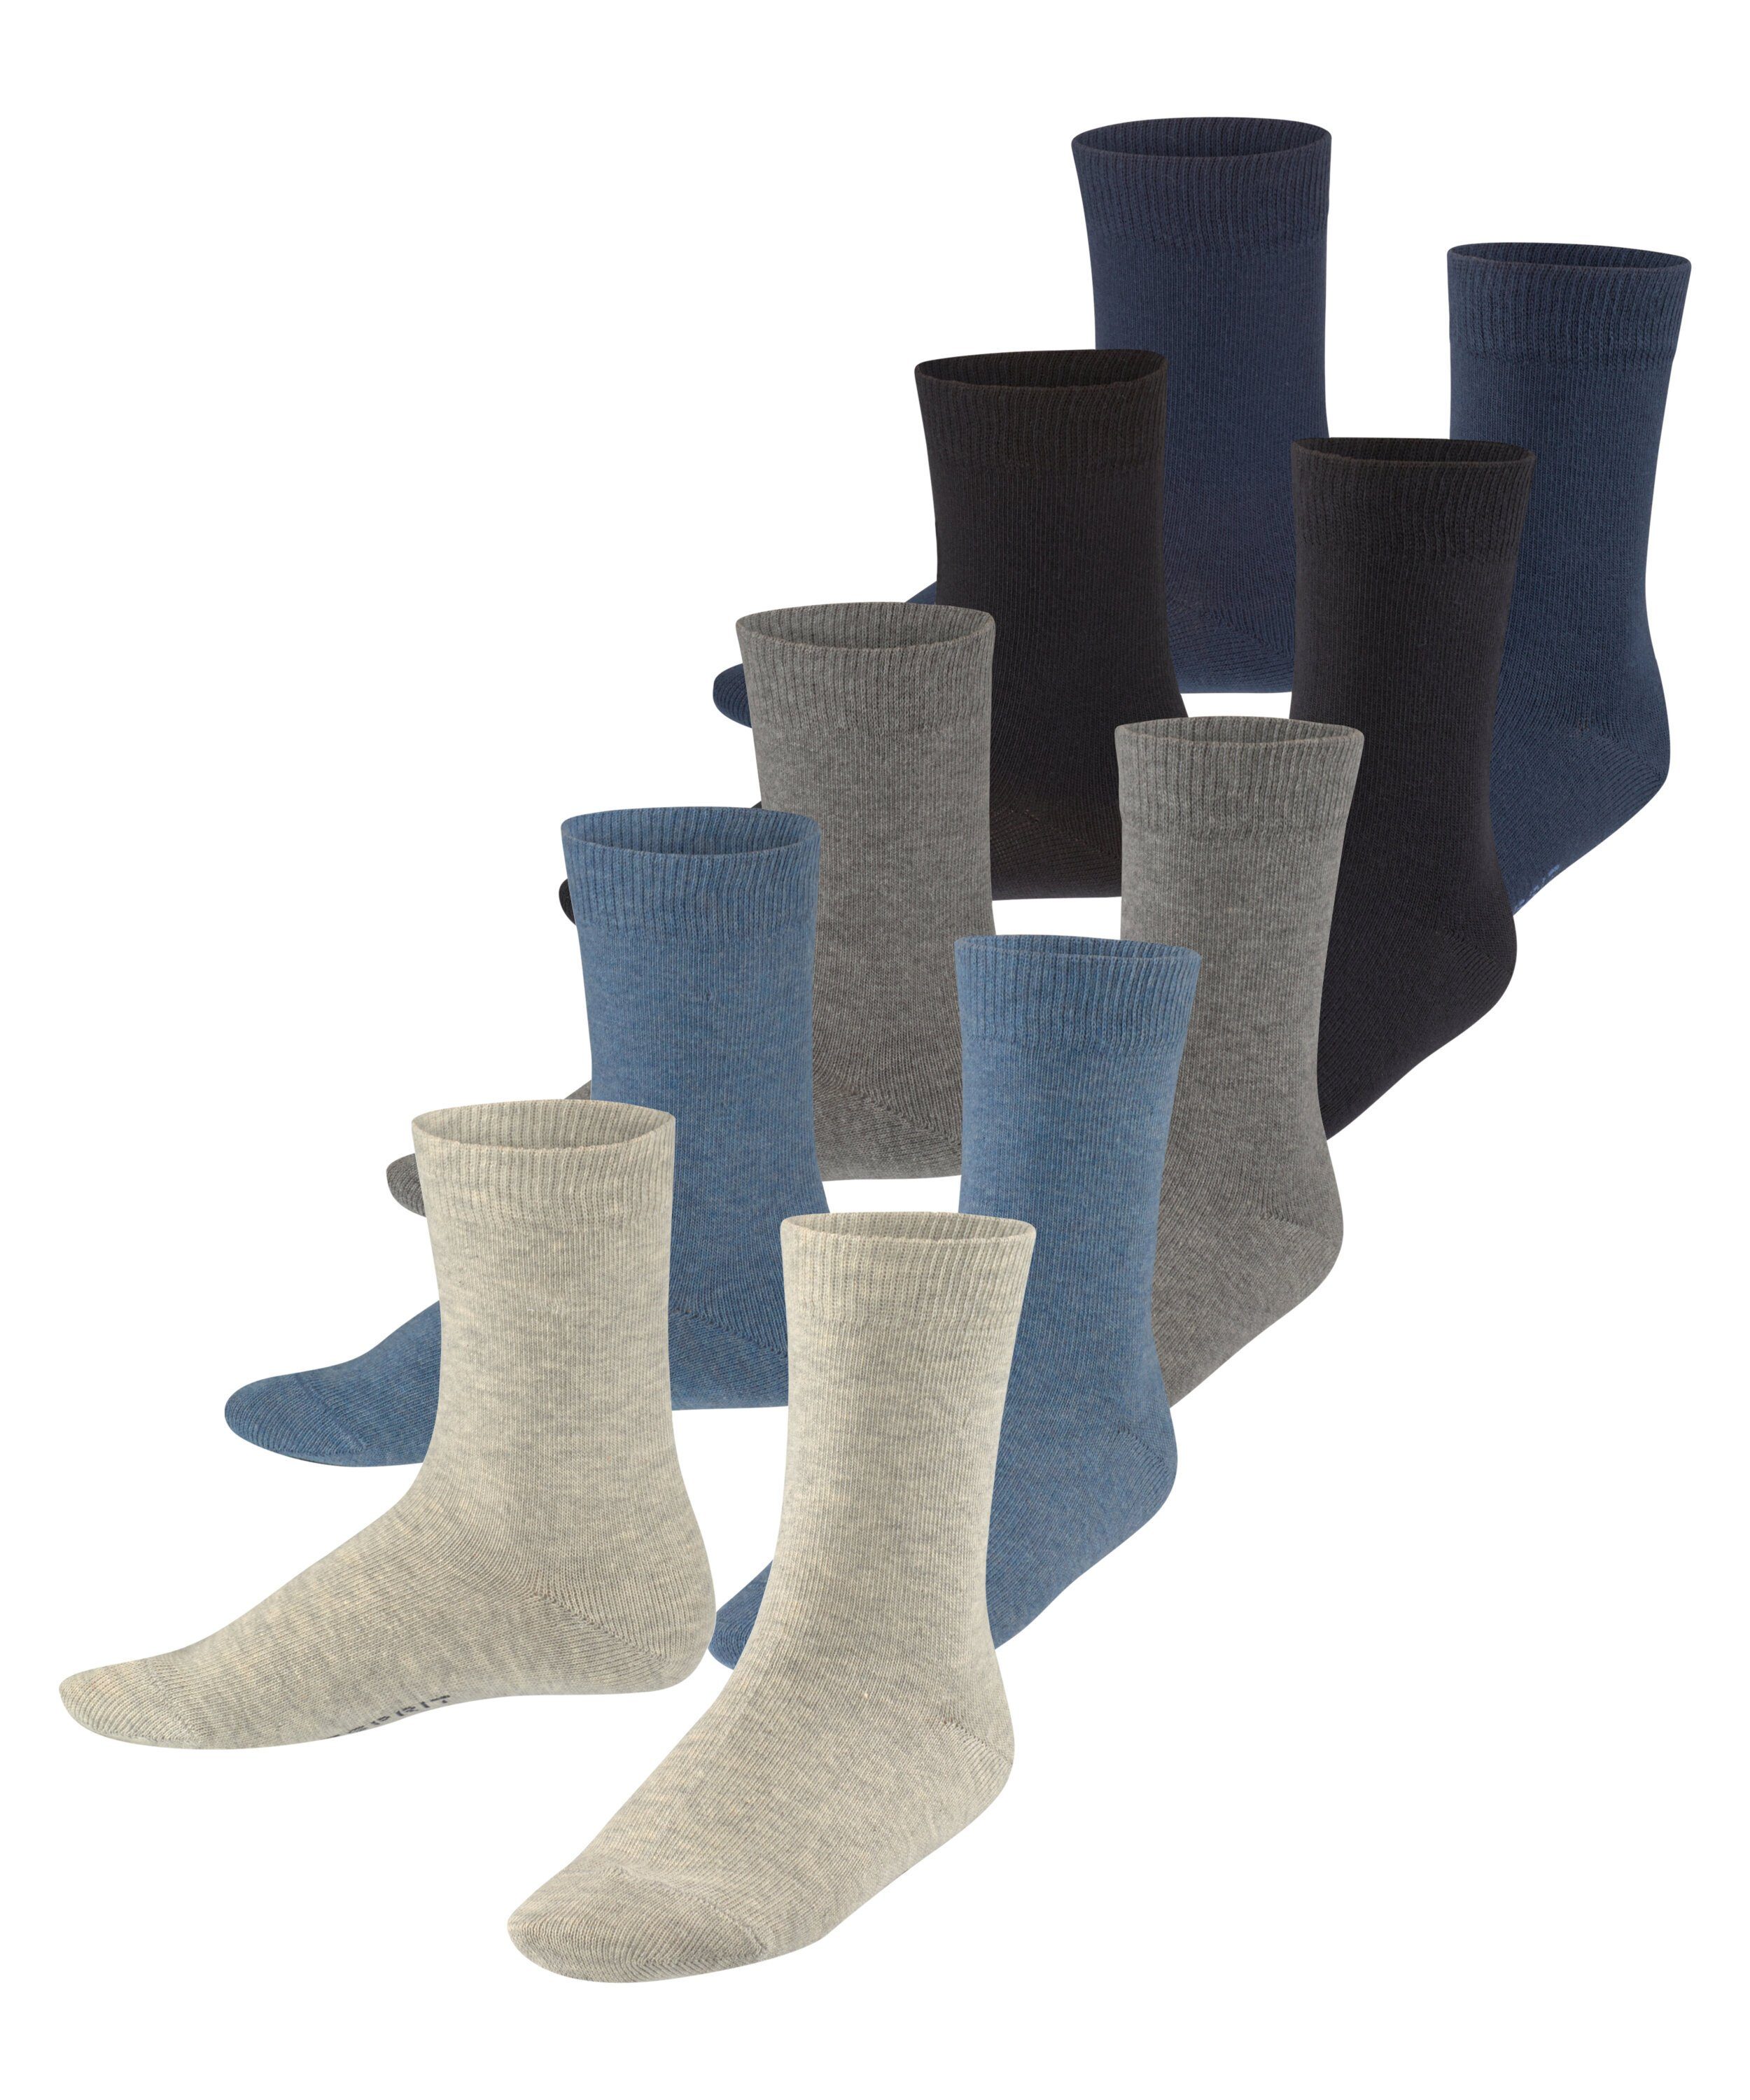 Socken sortiment Solid (5-Paar) Esprit Mix (0070) 5-Pack